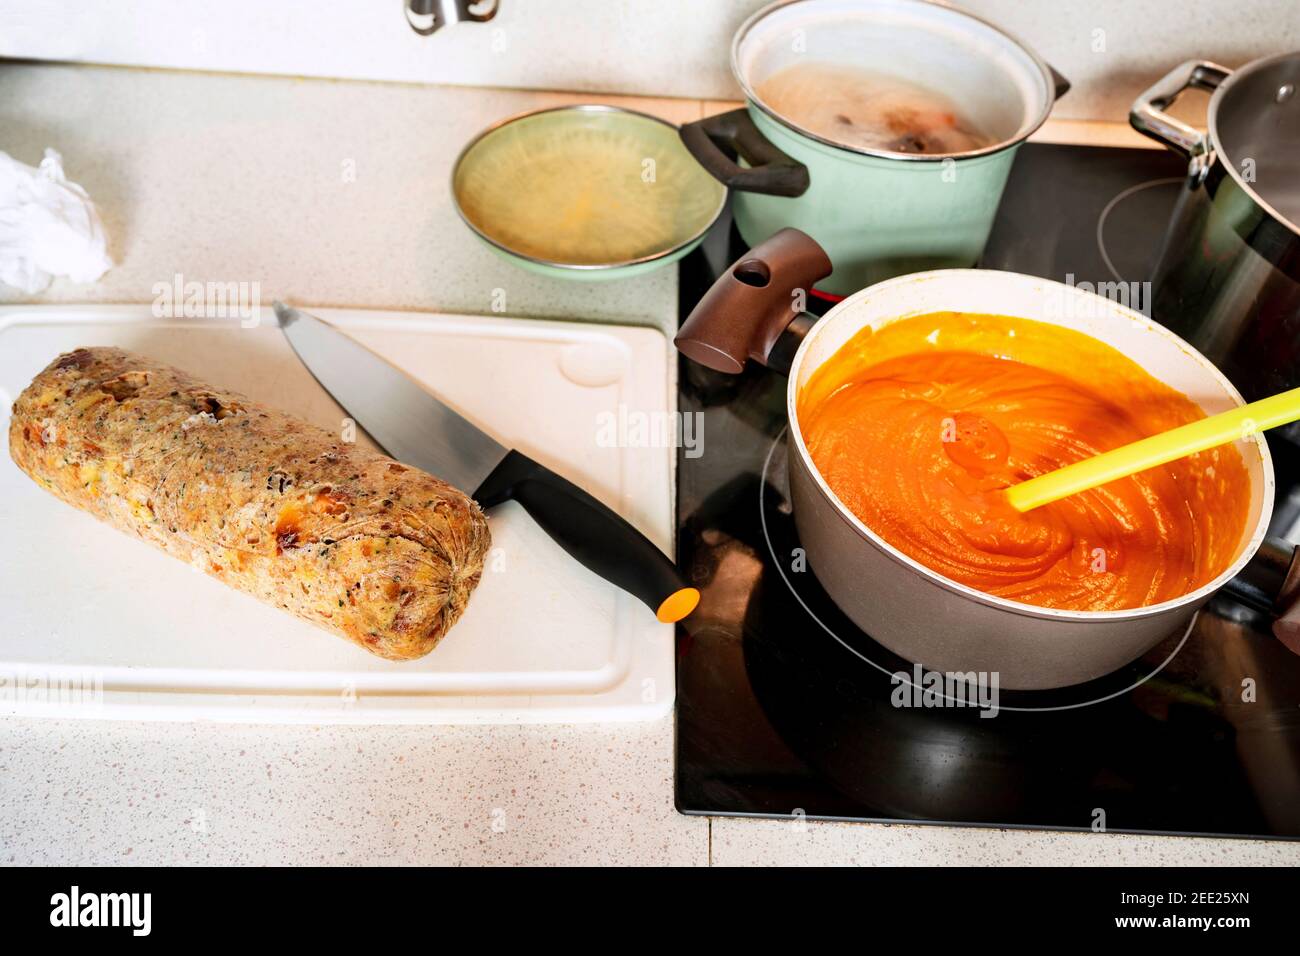 Frisch gekochte ganze Knödel mit Messer auf Küchenbrett, heiße sprudelnde Tomatensauce mit Löffel in der Pfanne, Töpfe mit gekochtem Rindfleisch auf Keramik-Kochfeld. Vorbereitung Stockfoto